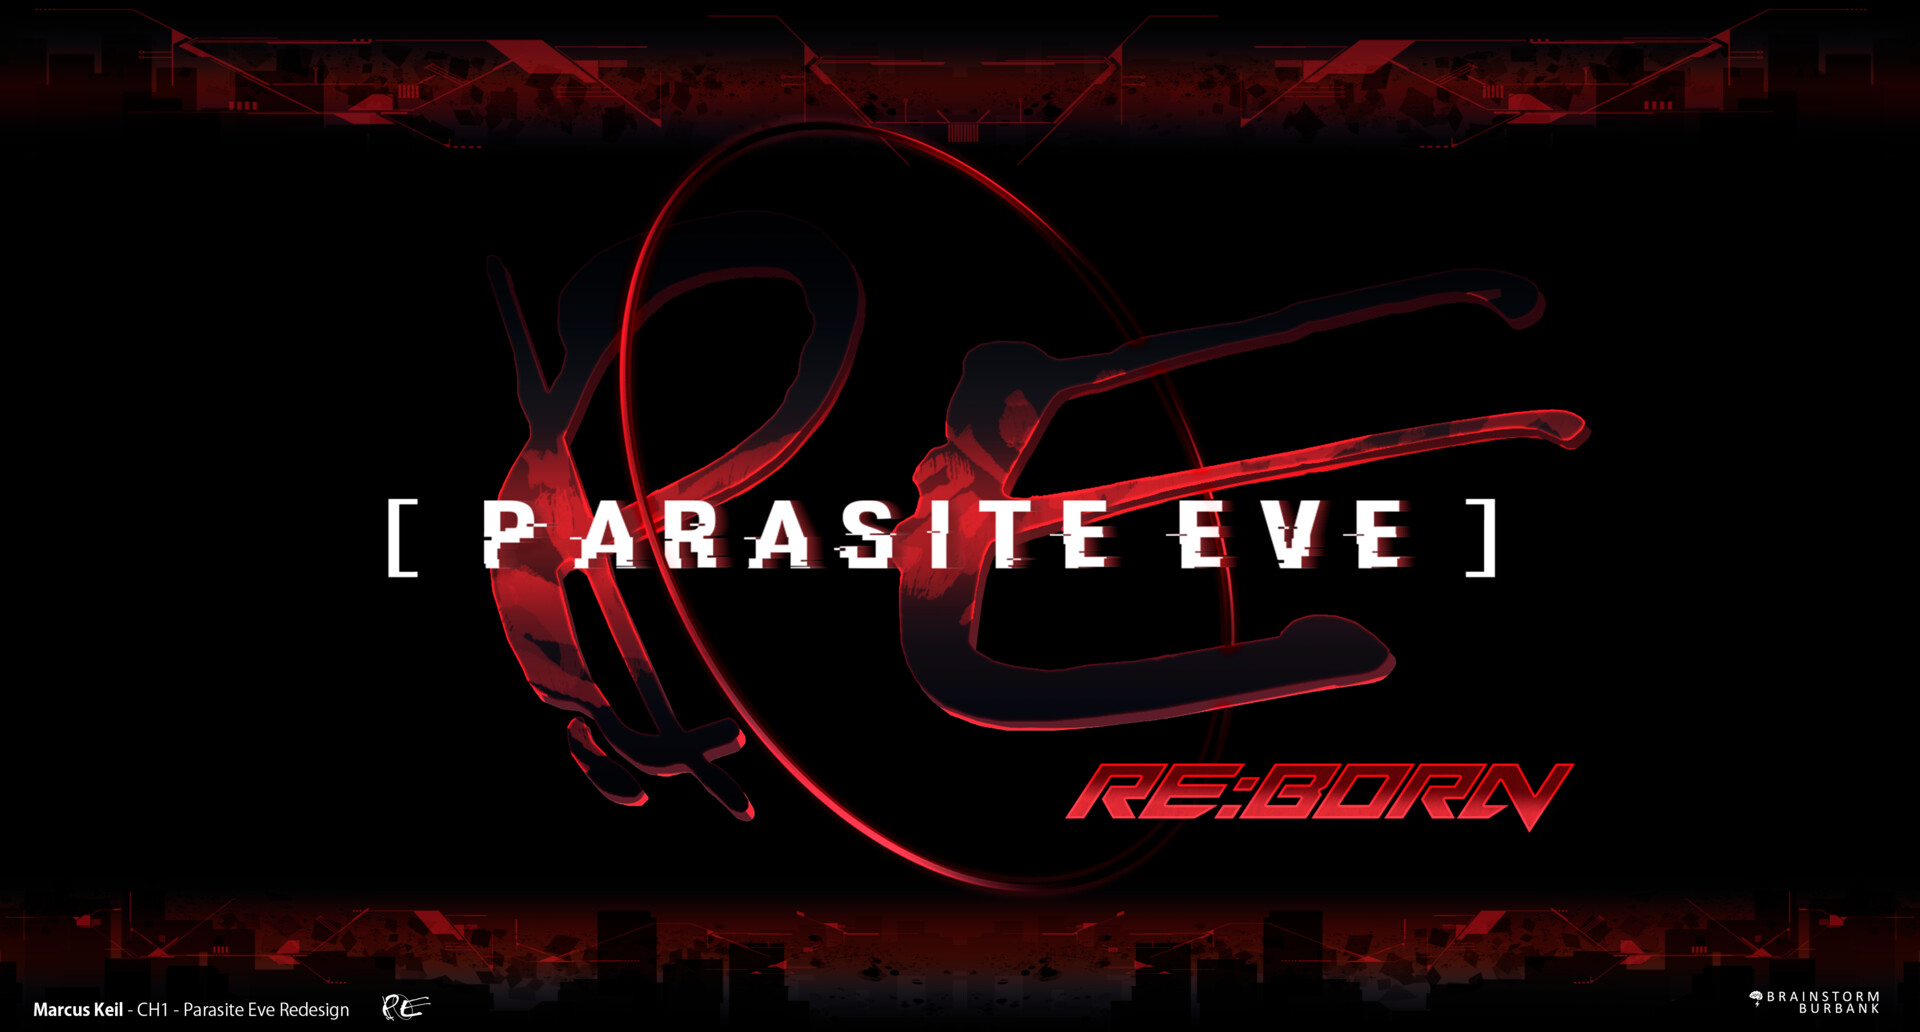 Marcus Keil - Parasite Eve: Reborn - EVE